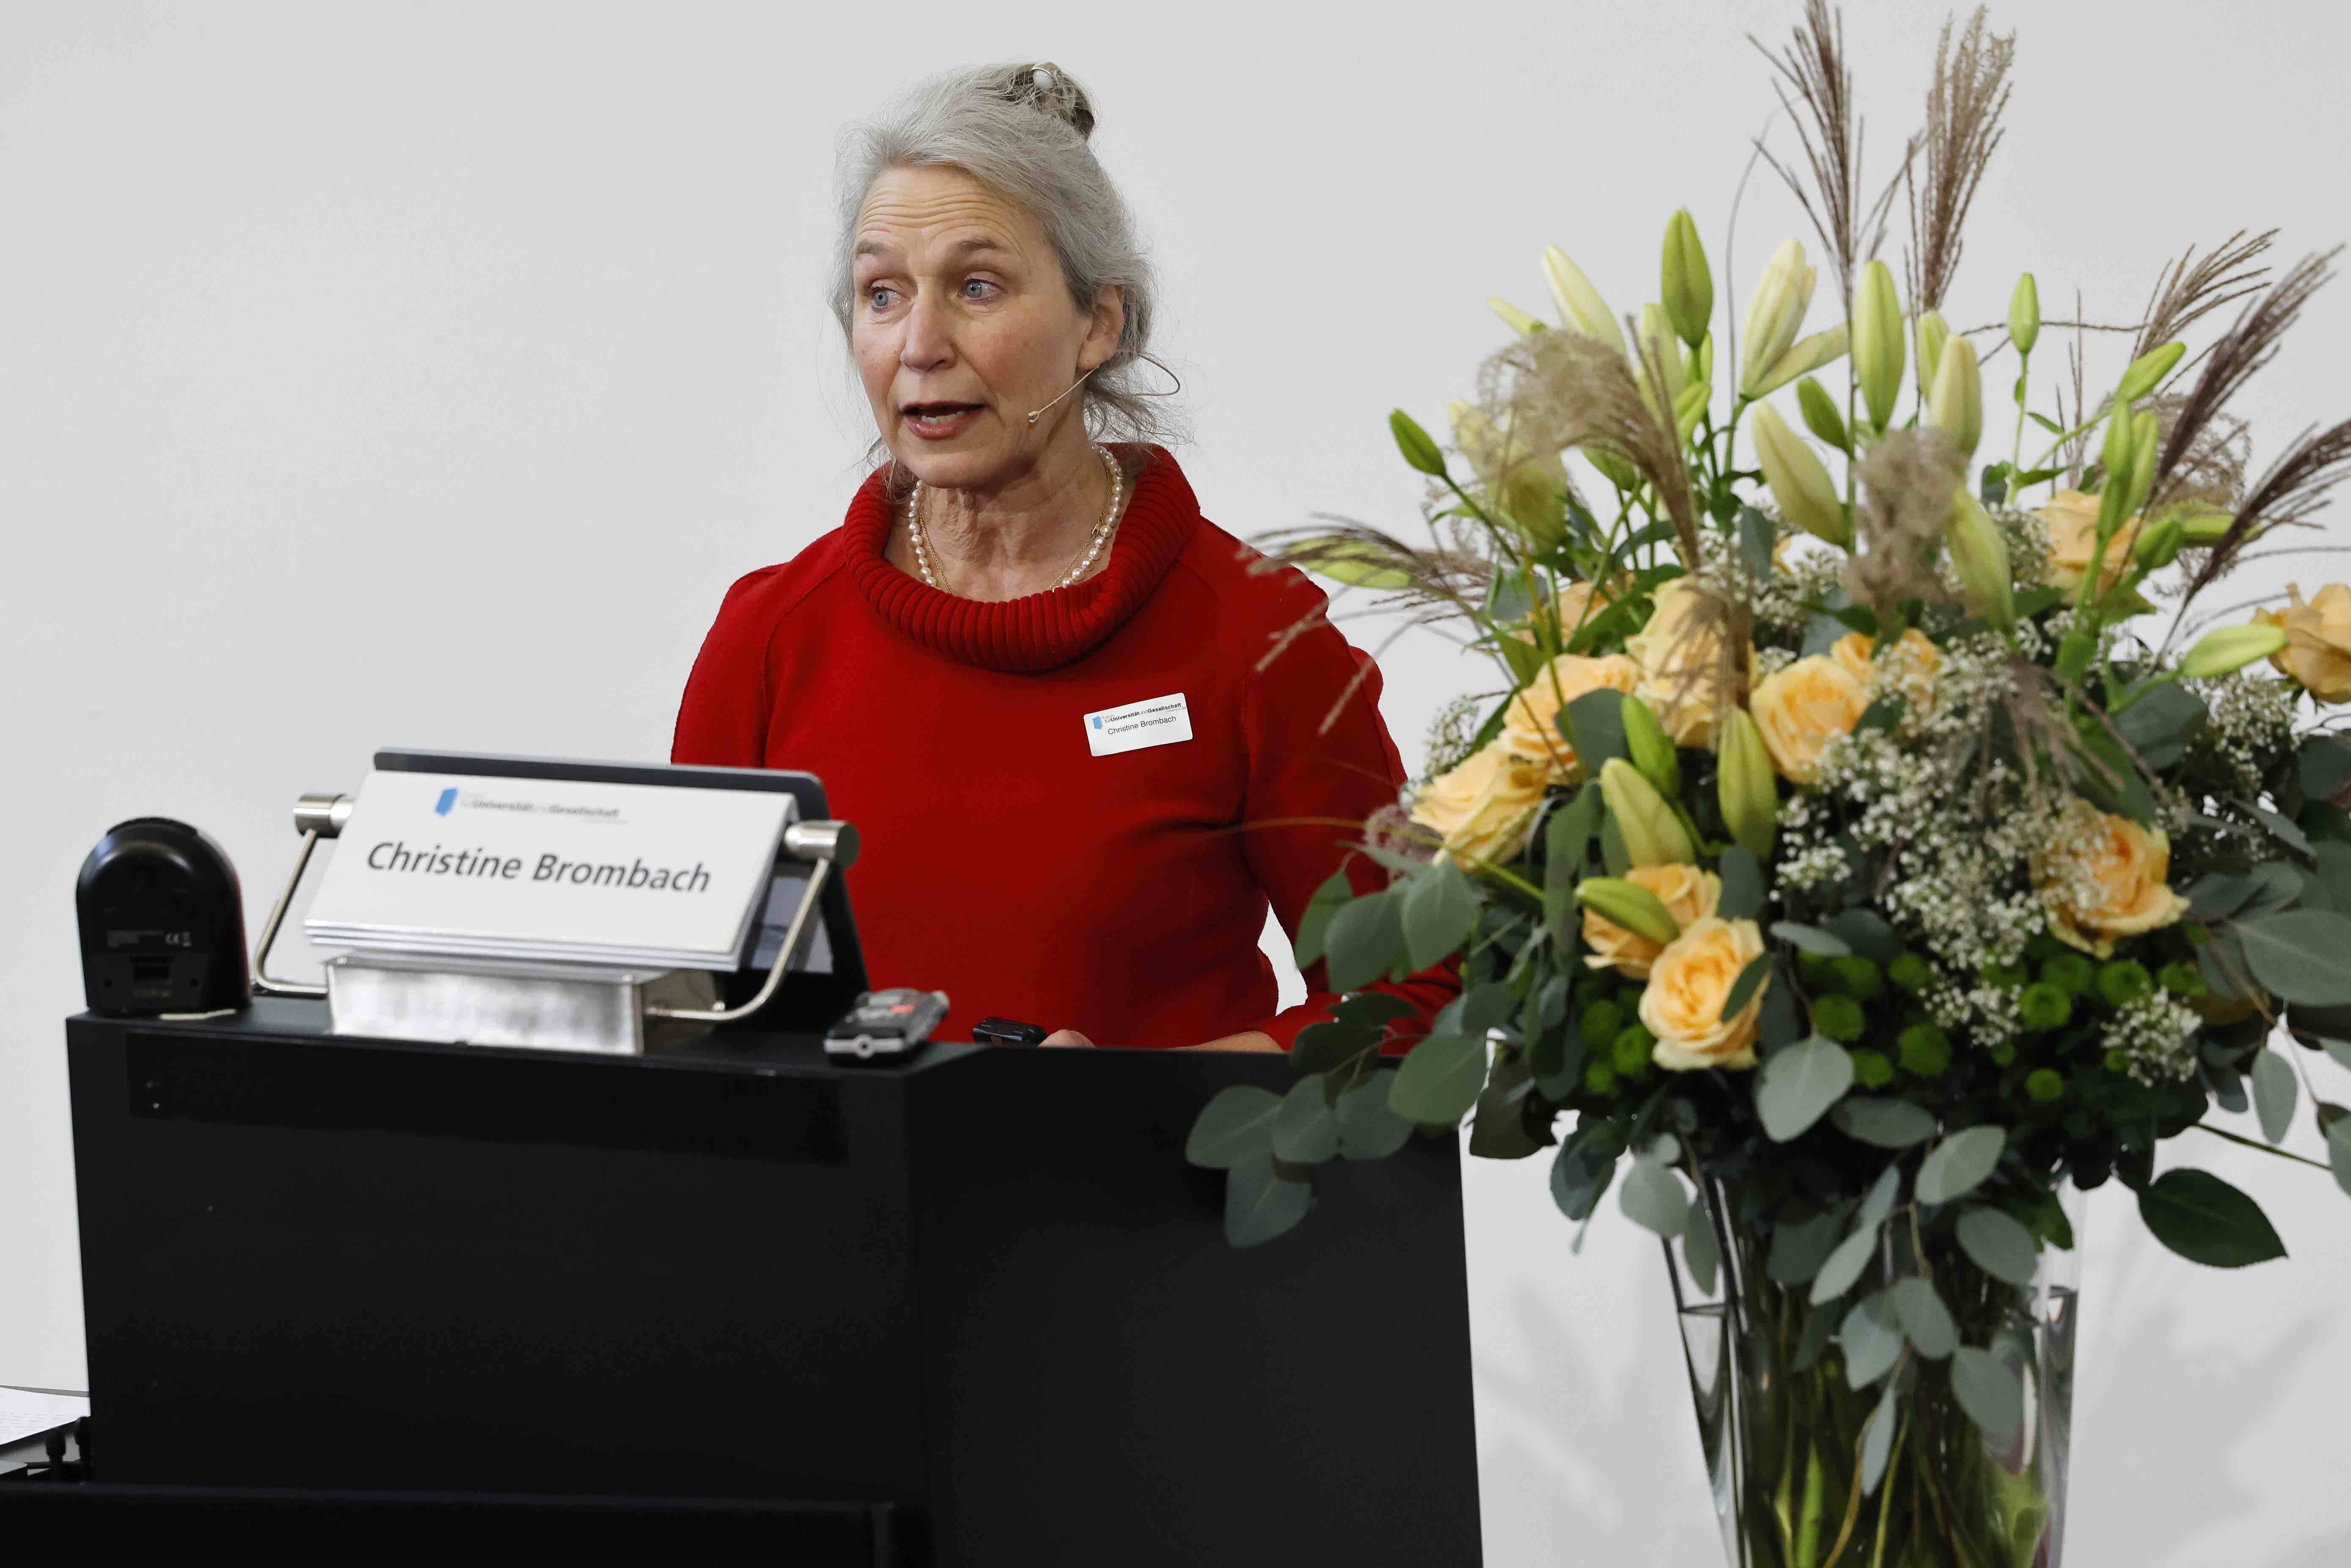 Aufnahme der Referentin Prof. Dr. Christine Brombach hinter einem Rednerpult. Sie trägt ein rotes Kleid, neben ihr ist ein Blumenstrauss in beige- und Gelbtönen zu sehen.